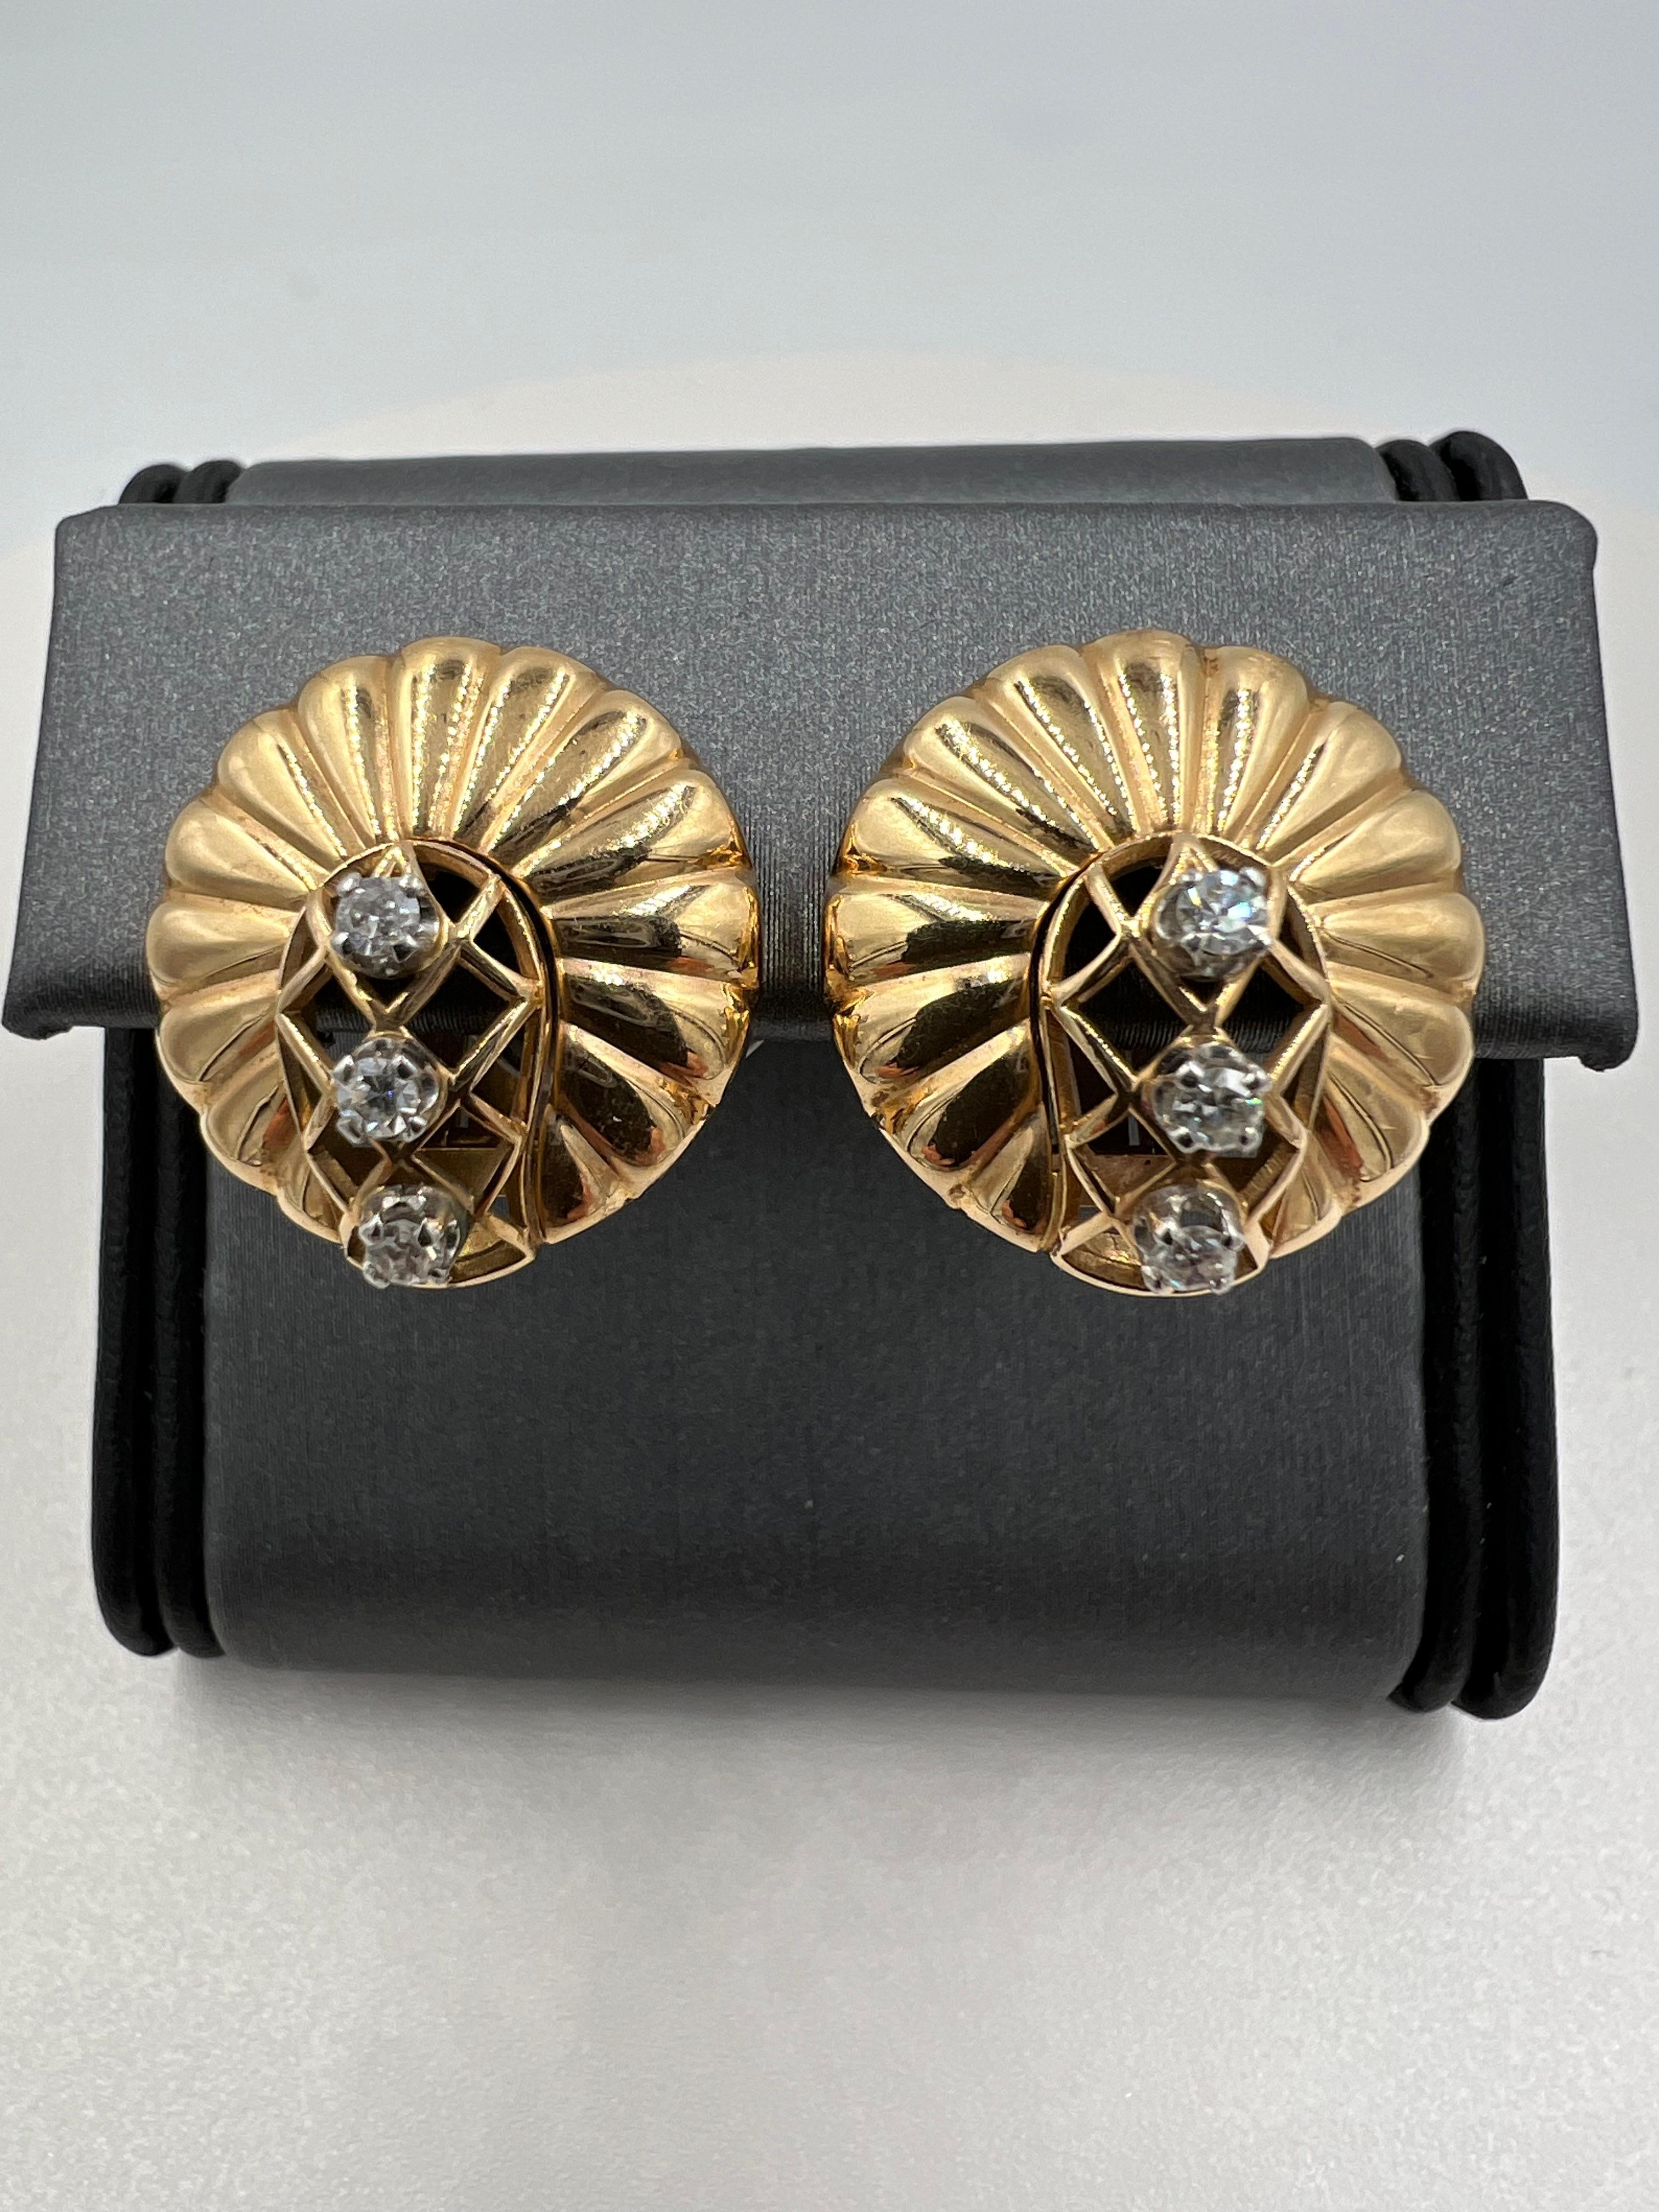 
Retro-Diamant-Ohrstecker aus Gold, ca. 1950er Jahre

Die 1950er Jahre waren ein Jahrzehnt, das für seine glamouröse und elegante Mode bekannt war, und die Retro-Diamant-Ohrstecker aus Gold sind ein perfektes Abbild dieser Ära. Diese umwerfenden